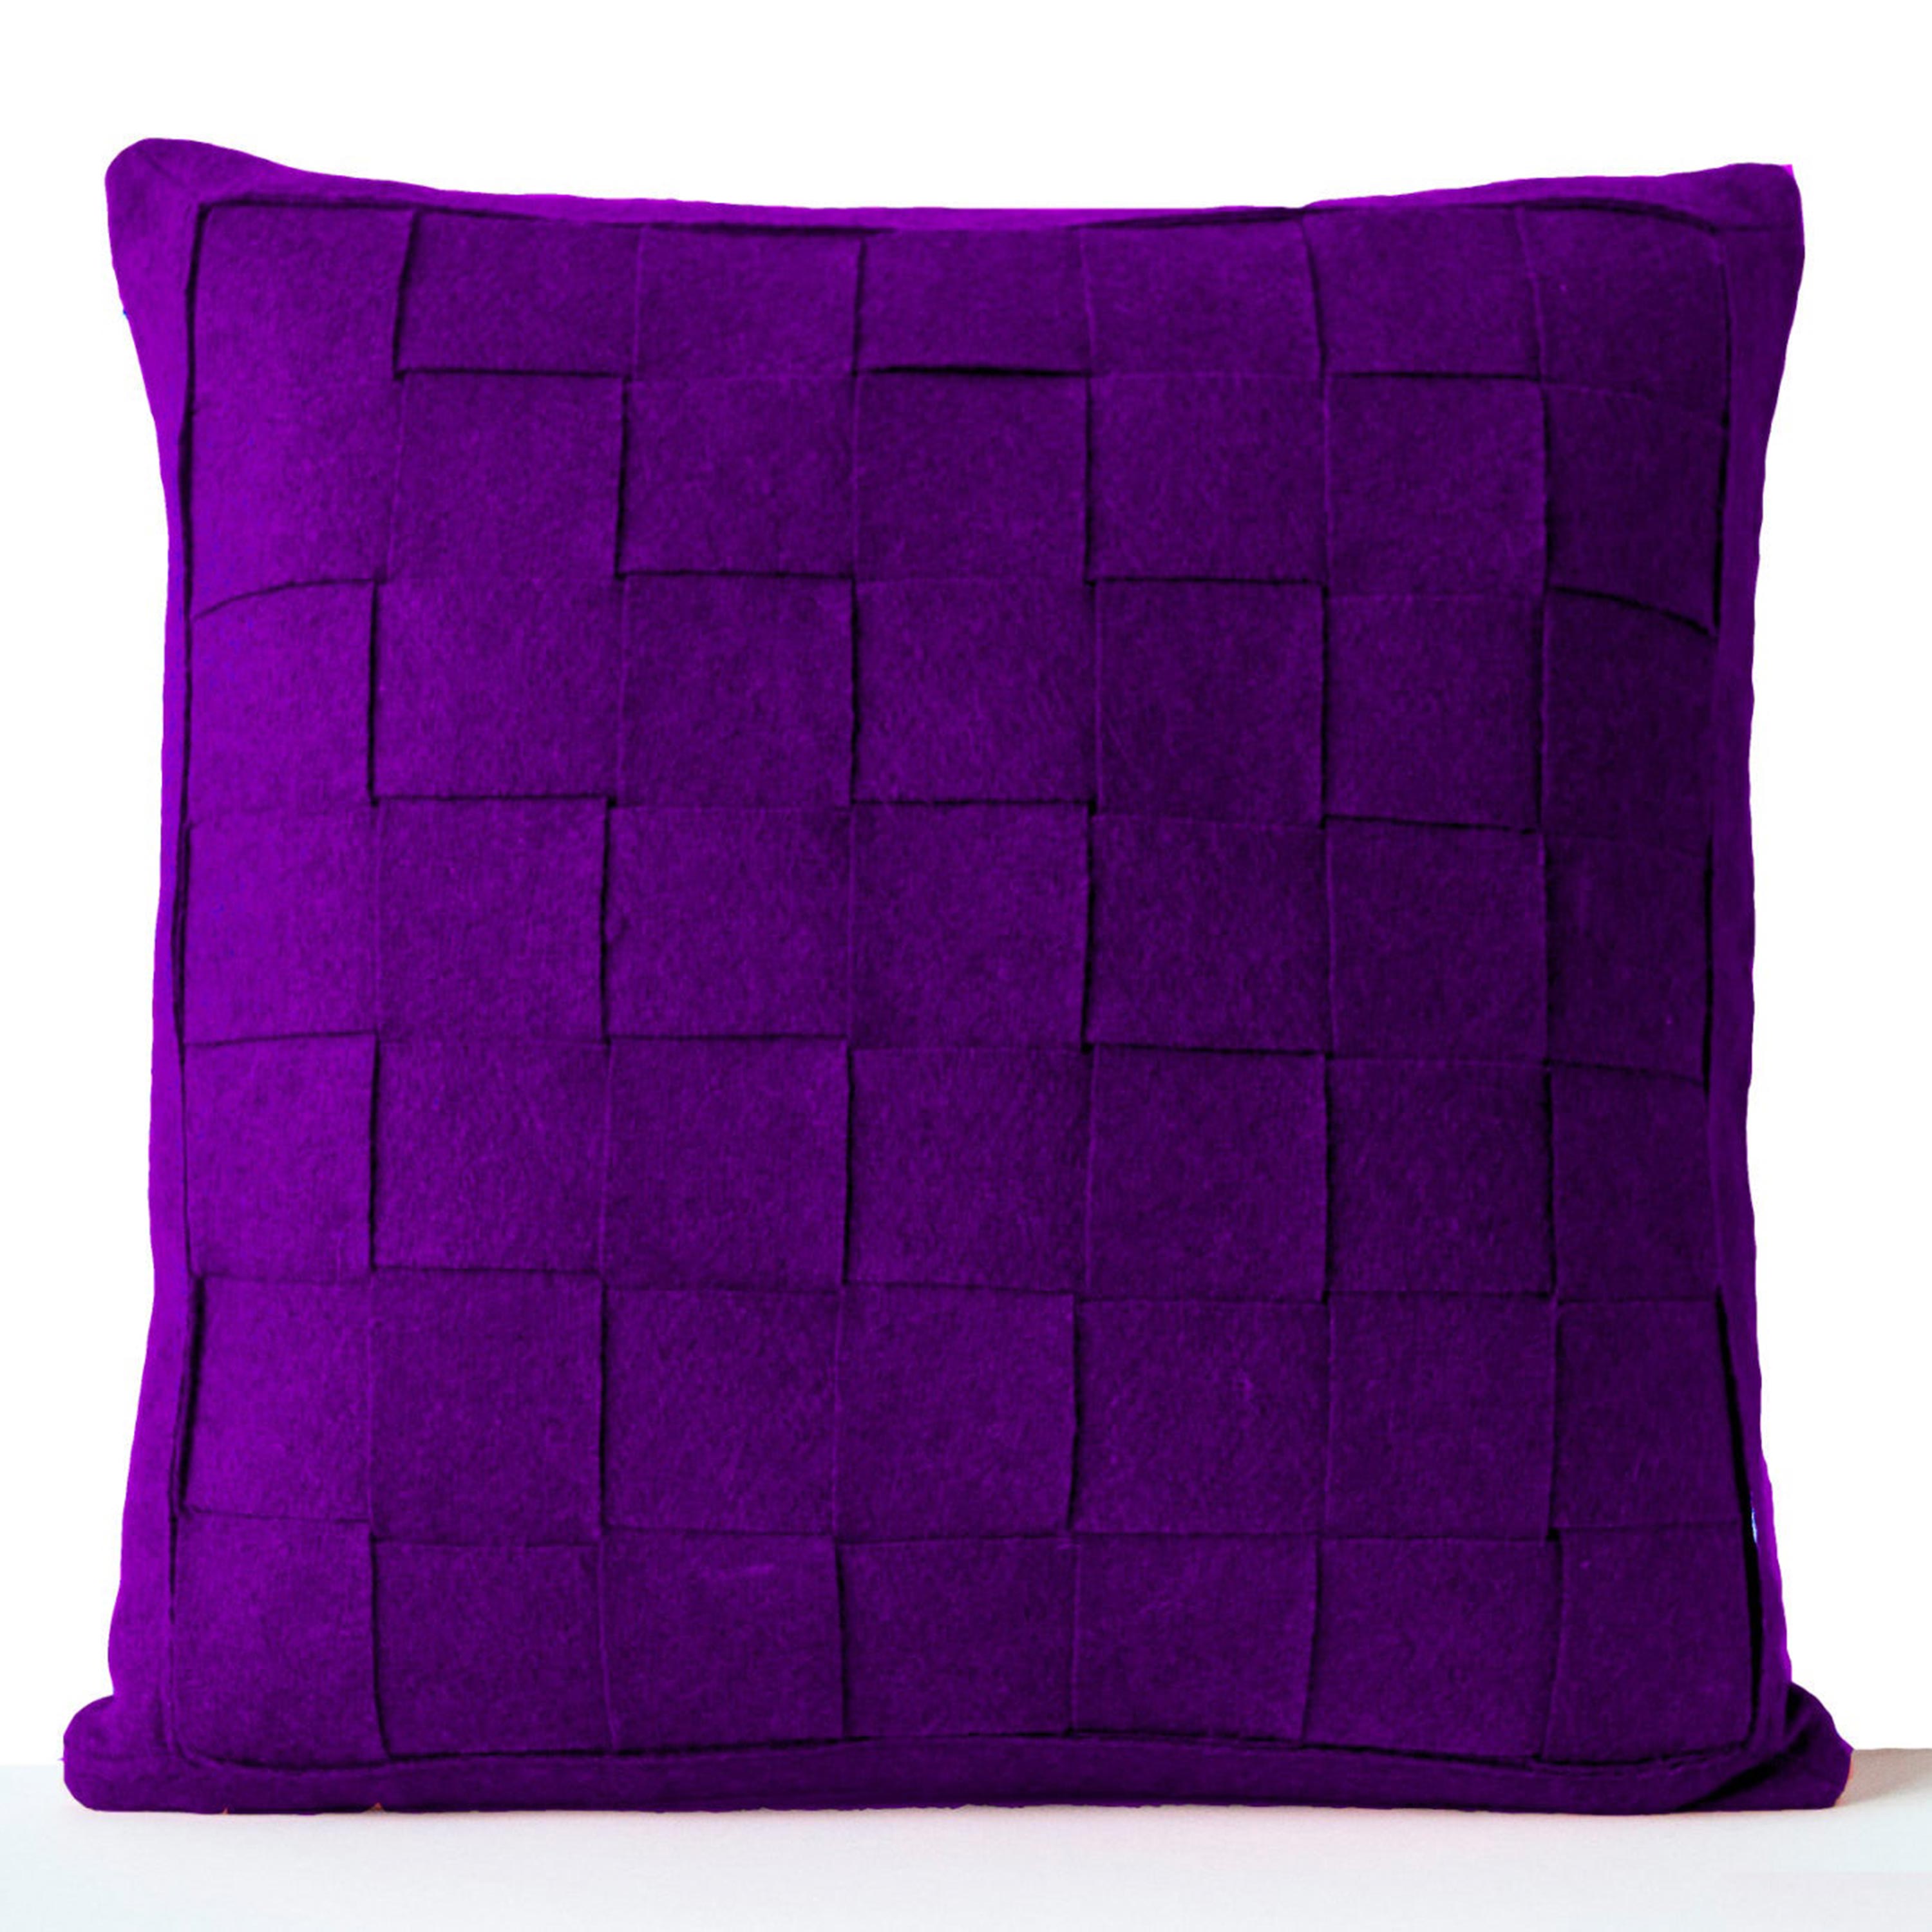 Purple Pillow - Felt Weave Pillows -Throw Pillow- Decorative Pillow- Gift- 18 inch square -Modern decor -Chair Pillow -Wool Mat Weave pillow